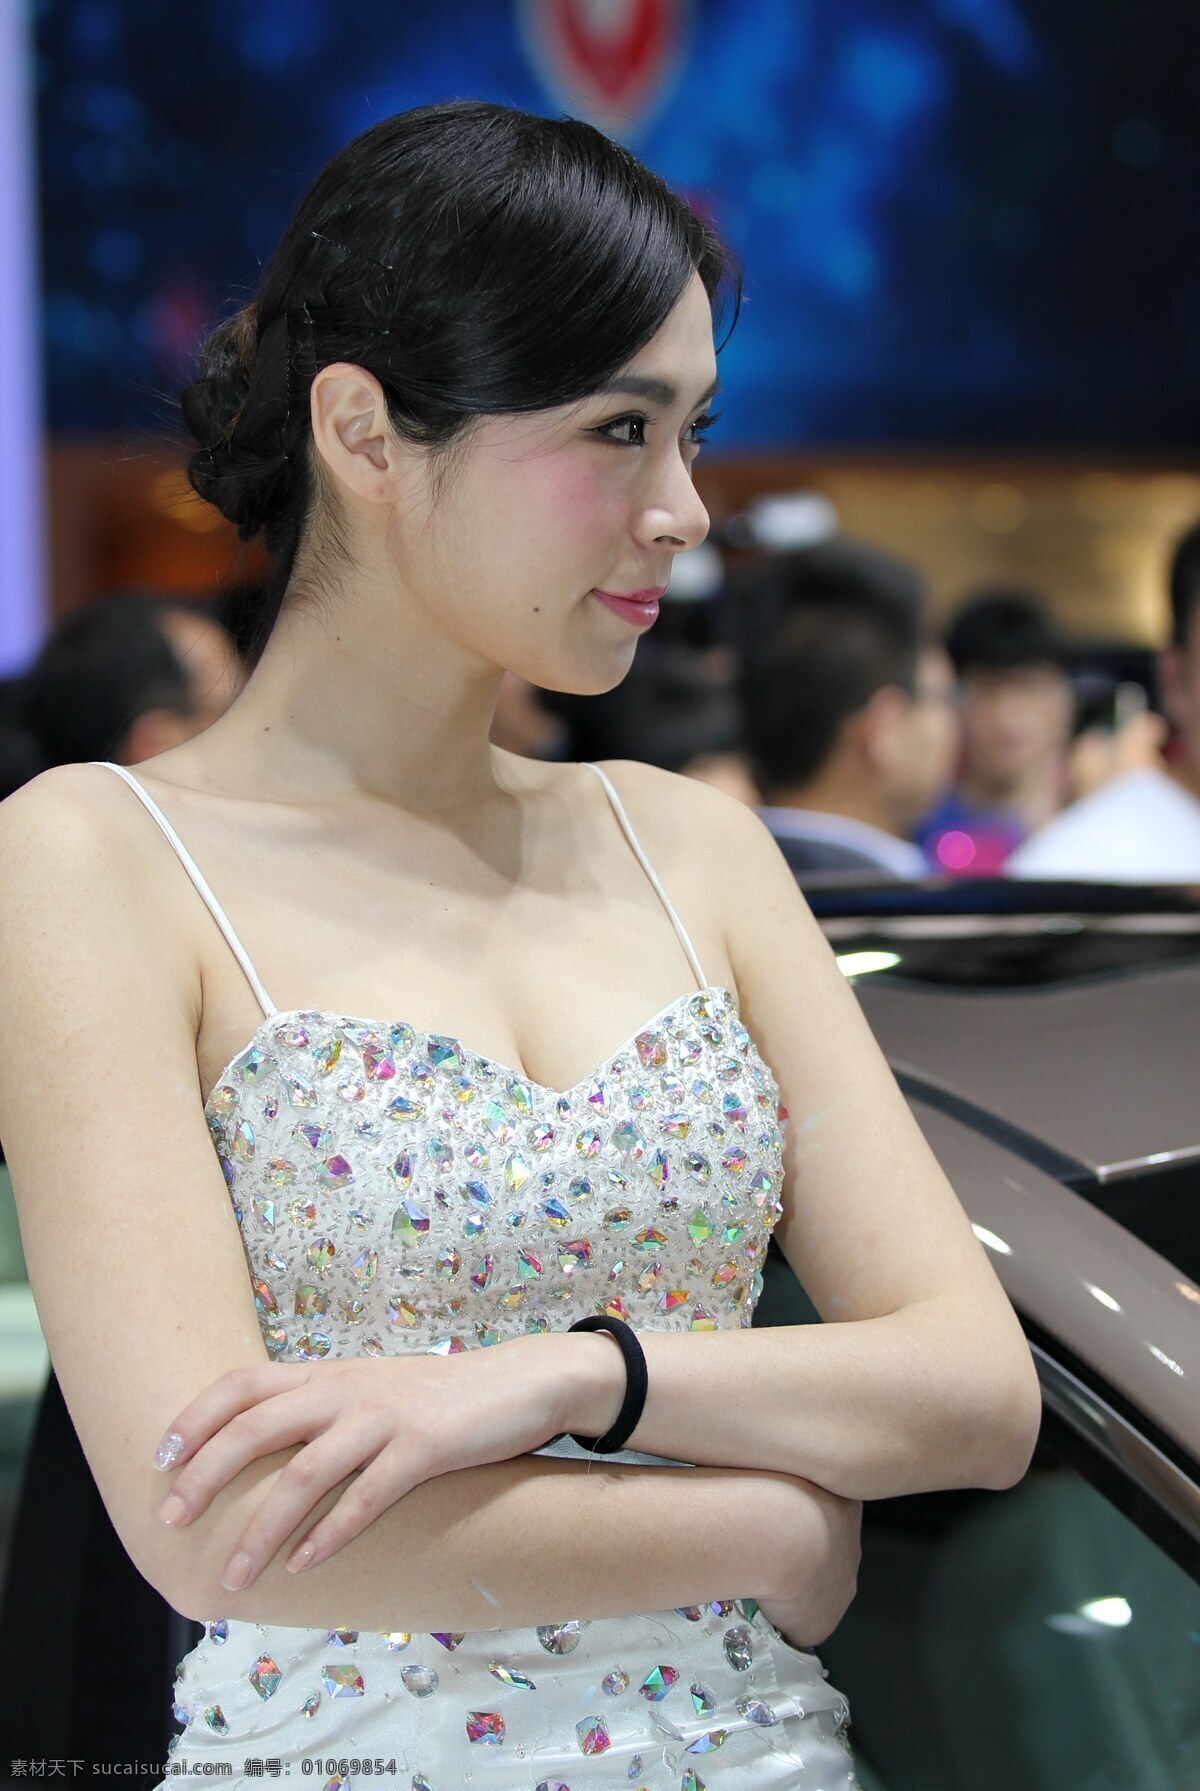 2014 北京 车展 美女 北京车展 闪亮 半侧面 车模 人物图库 女性女人